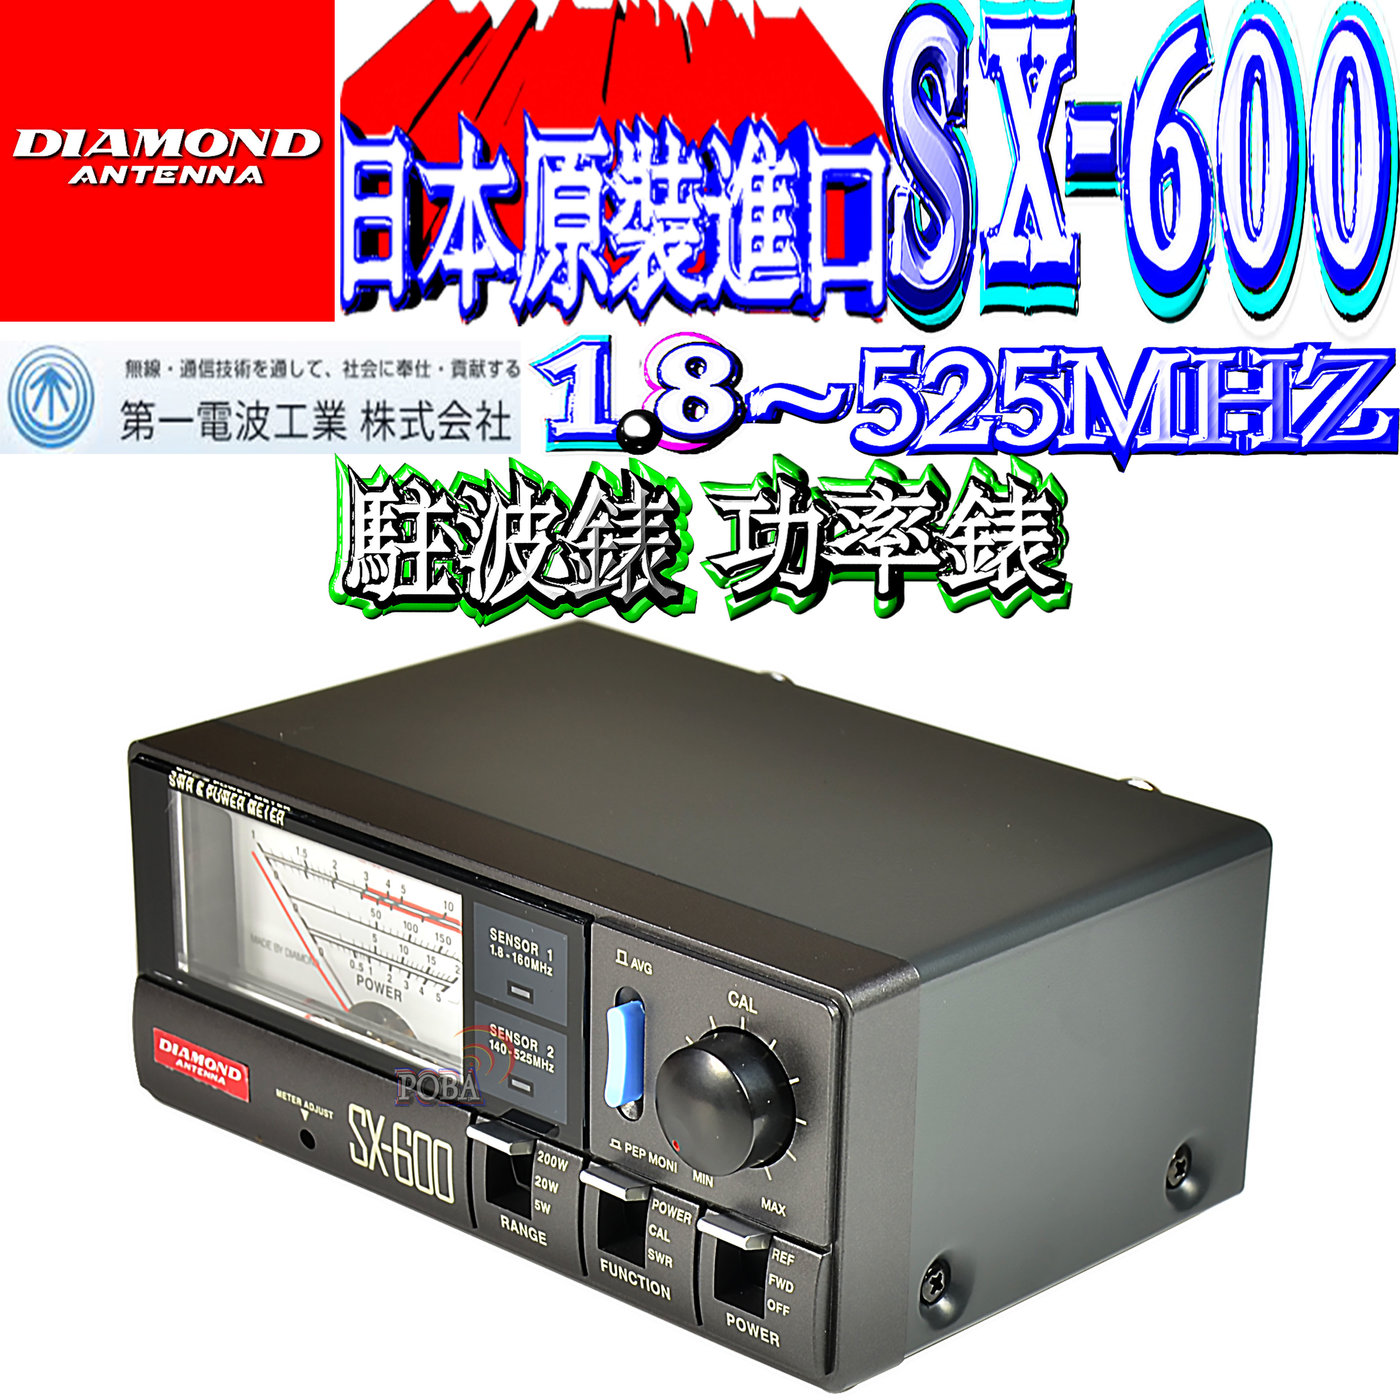 ☆波霸無線☆DIAMOND SX-600 駐波比錶日本第一電波1.8~525MHz功率錶SWR 